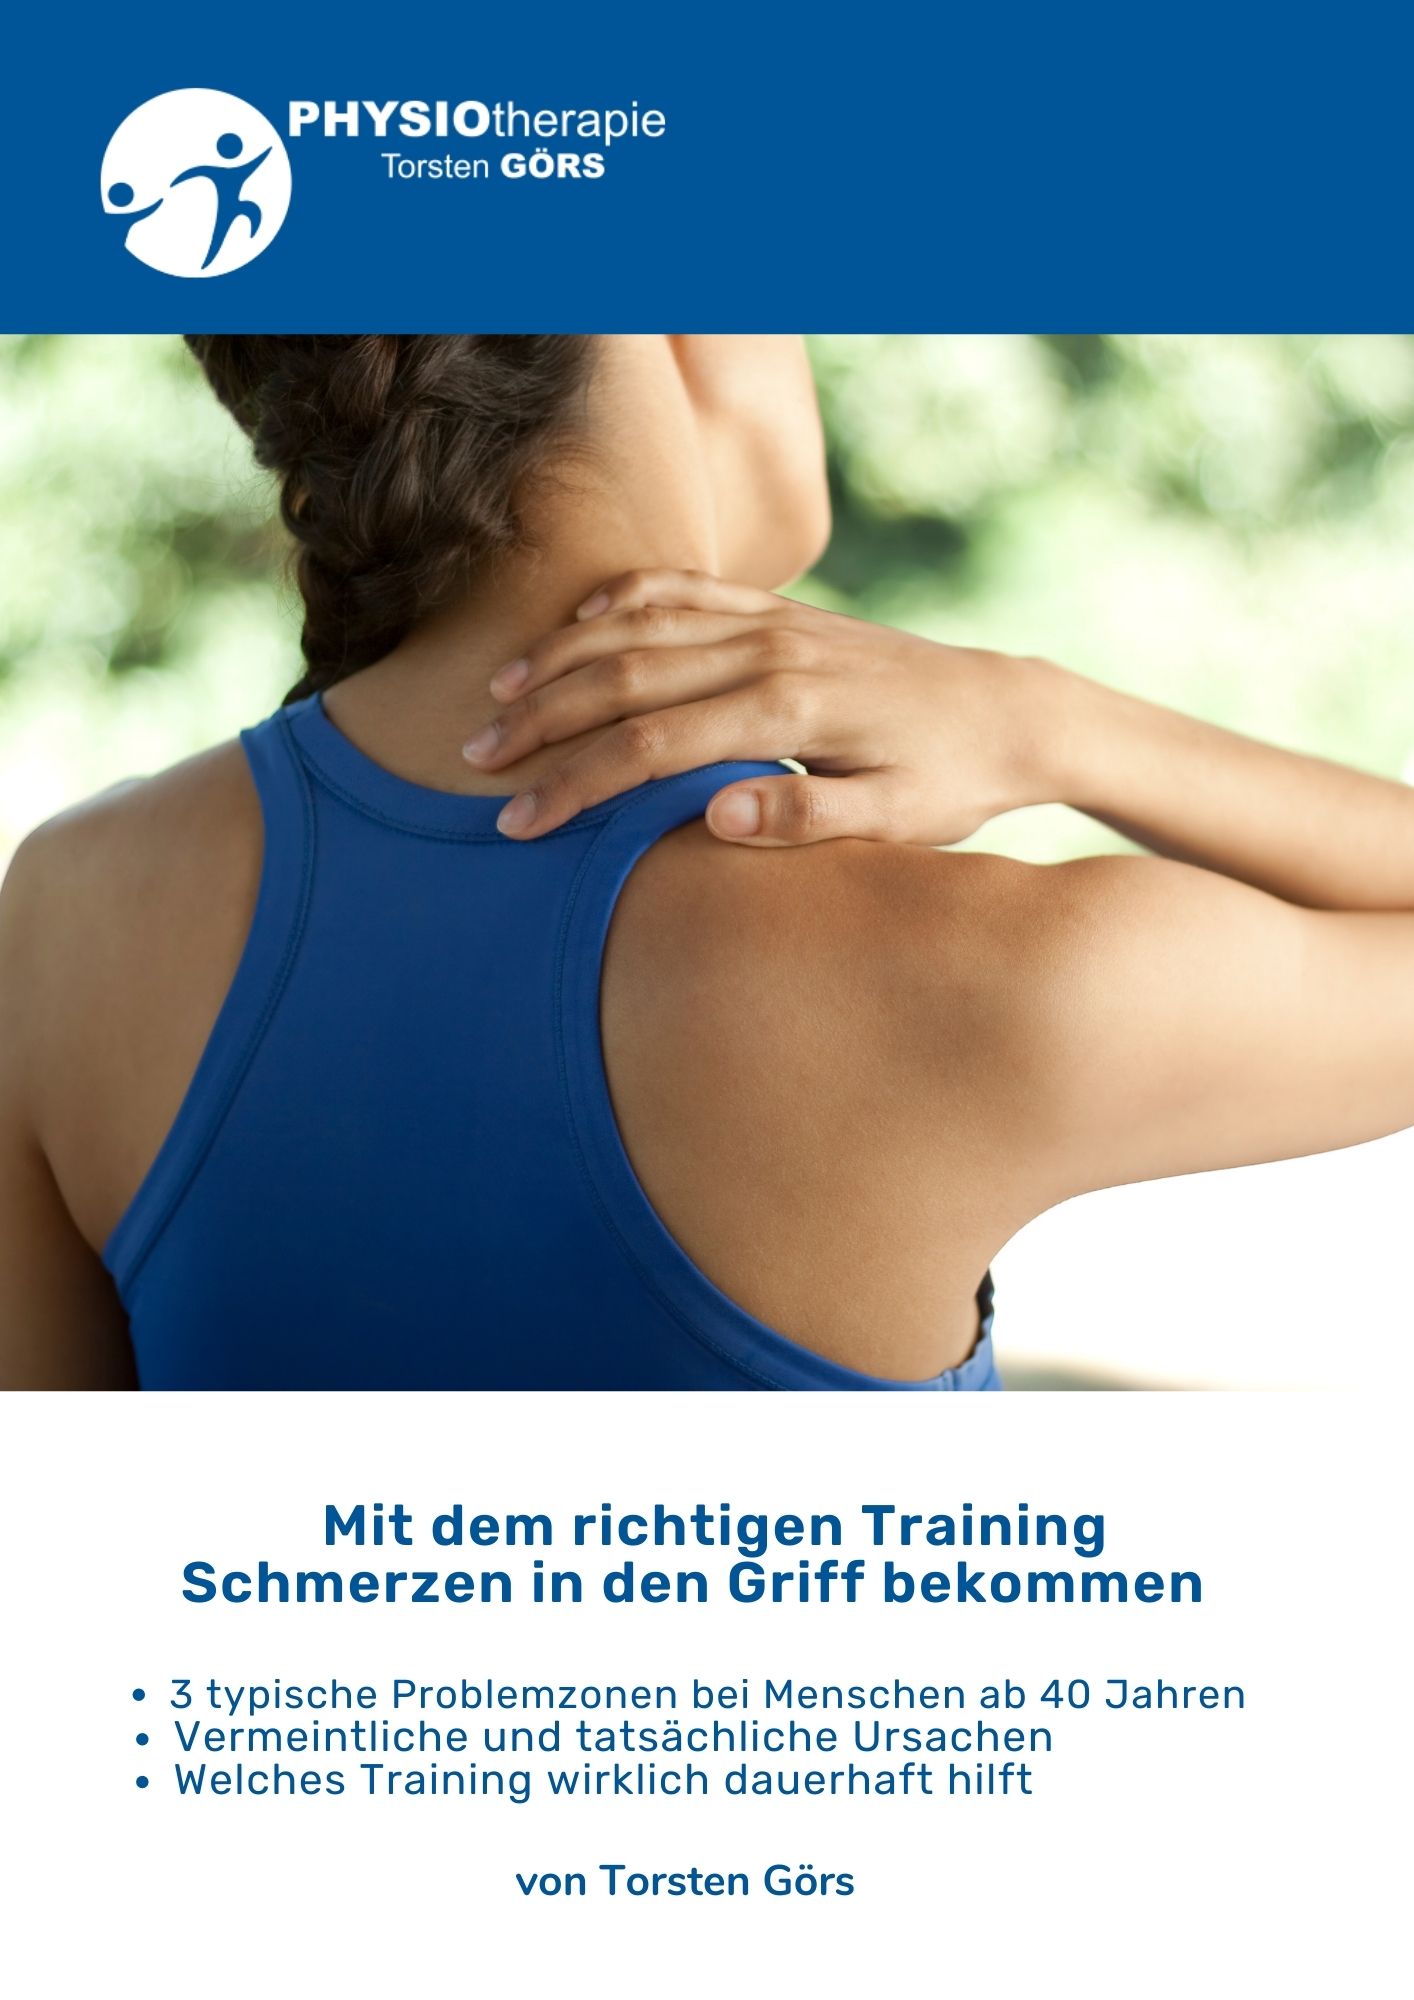 JPG-Training-gegen-Schmerzen-Torsten-Gors.jpg